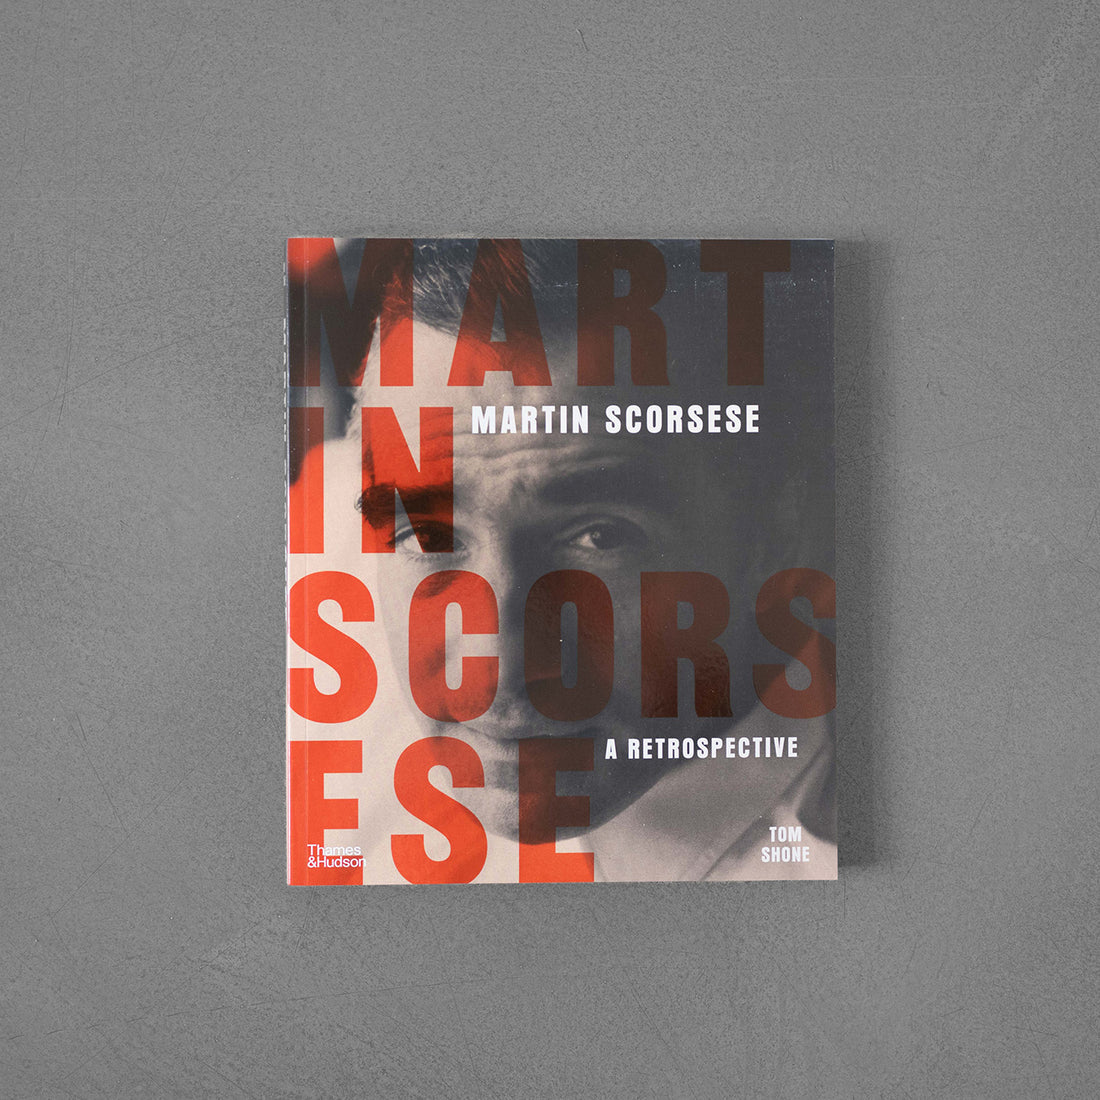 Martin Scorsese – Tom Shone